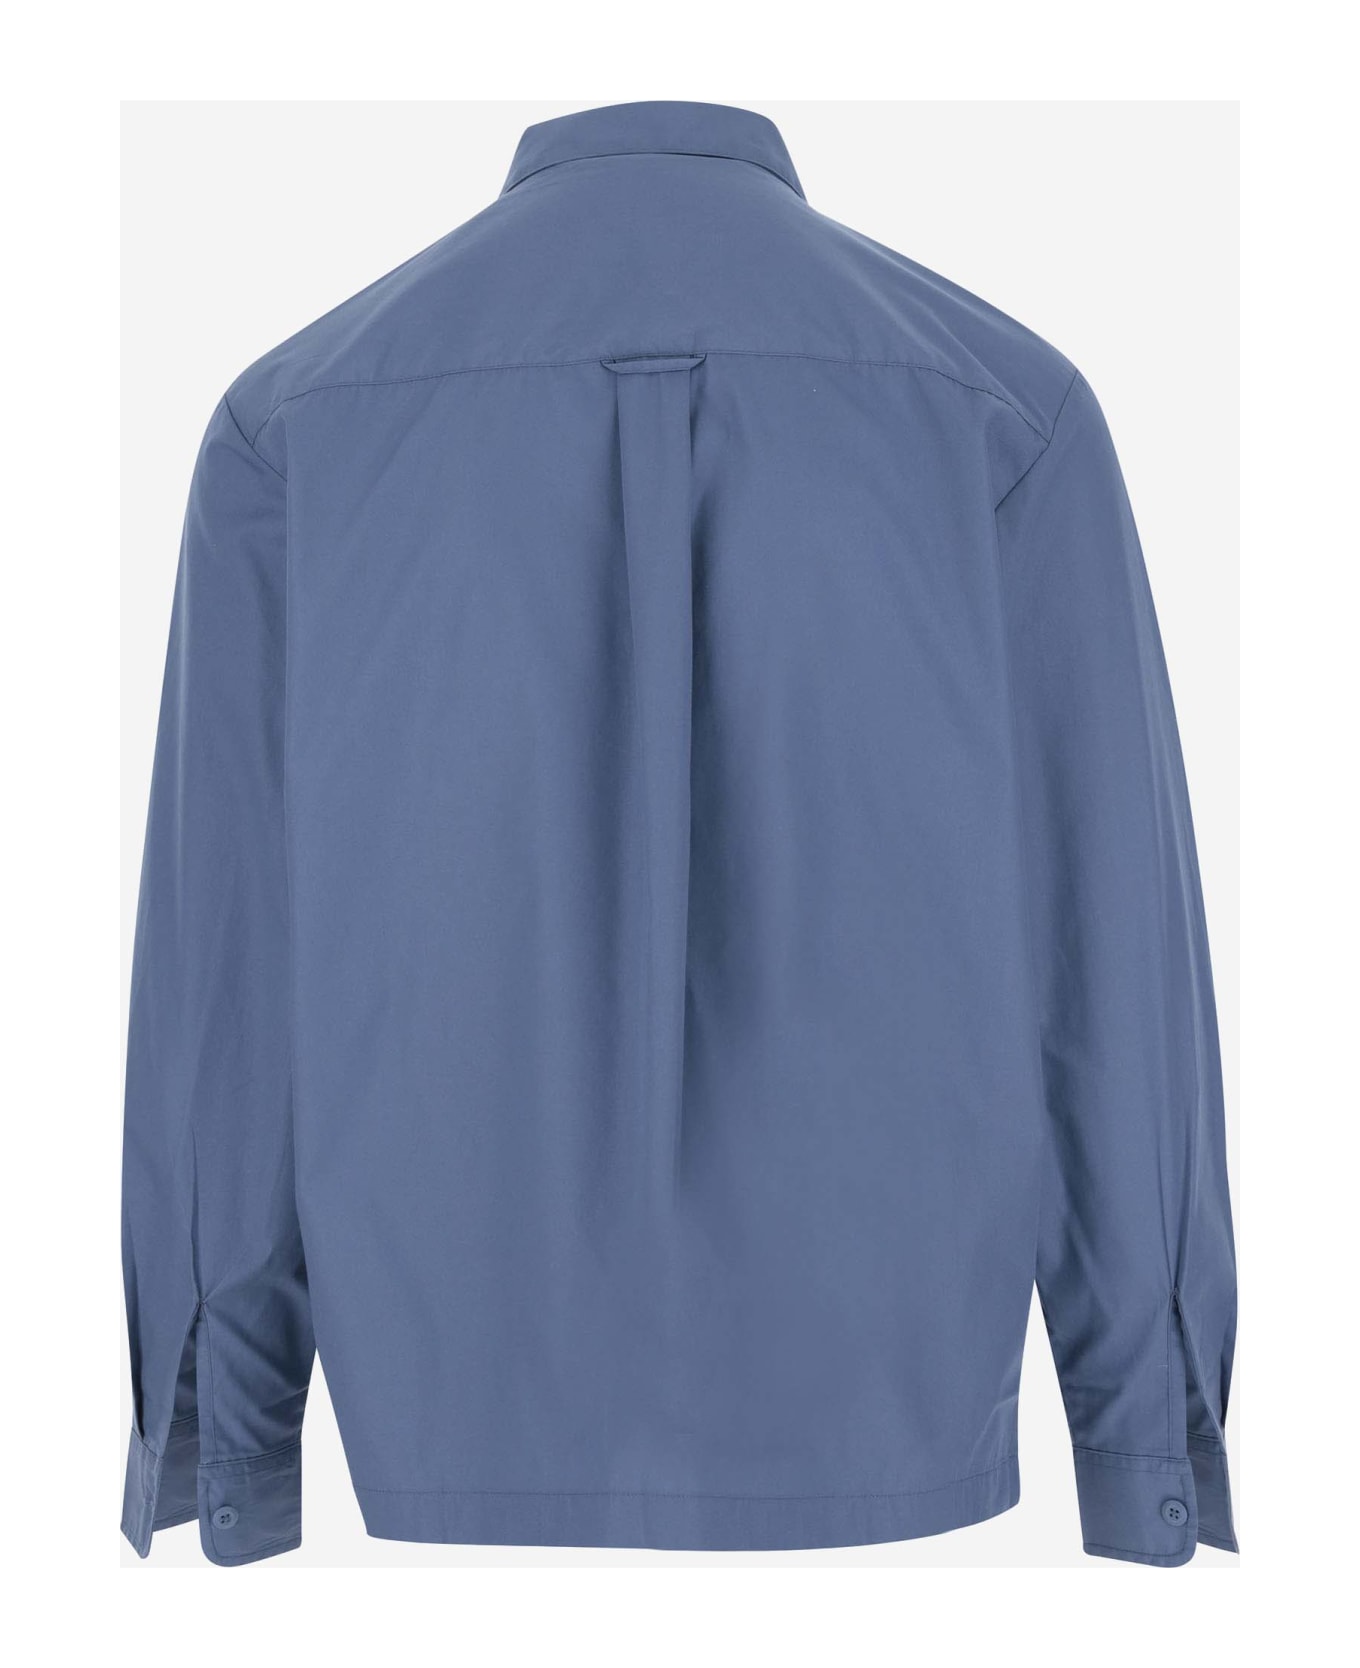 Carhartt Cotton Blend Shirt With Logo - Light Blue